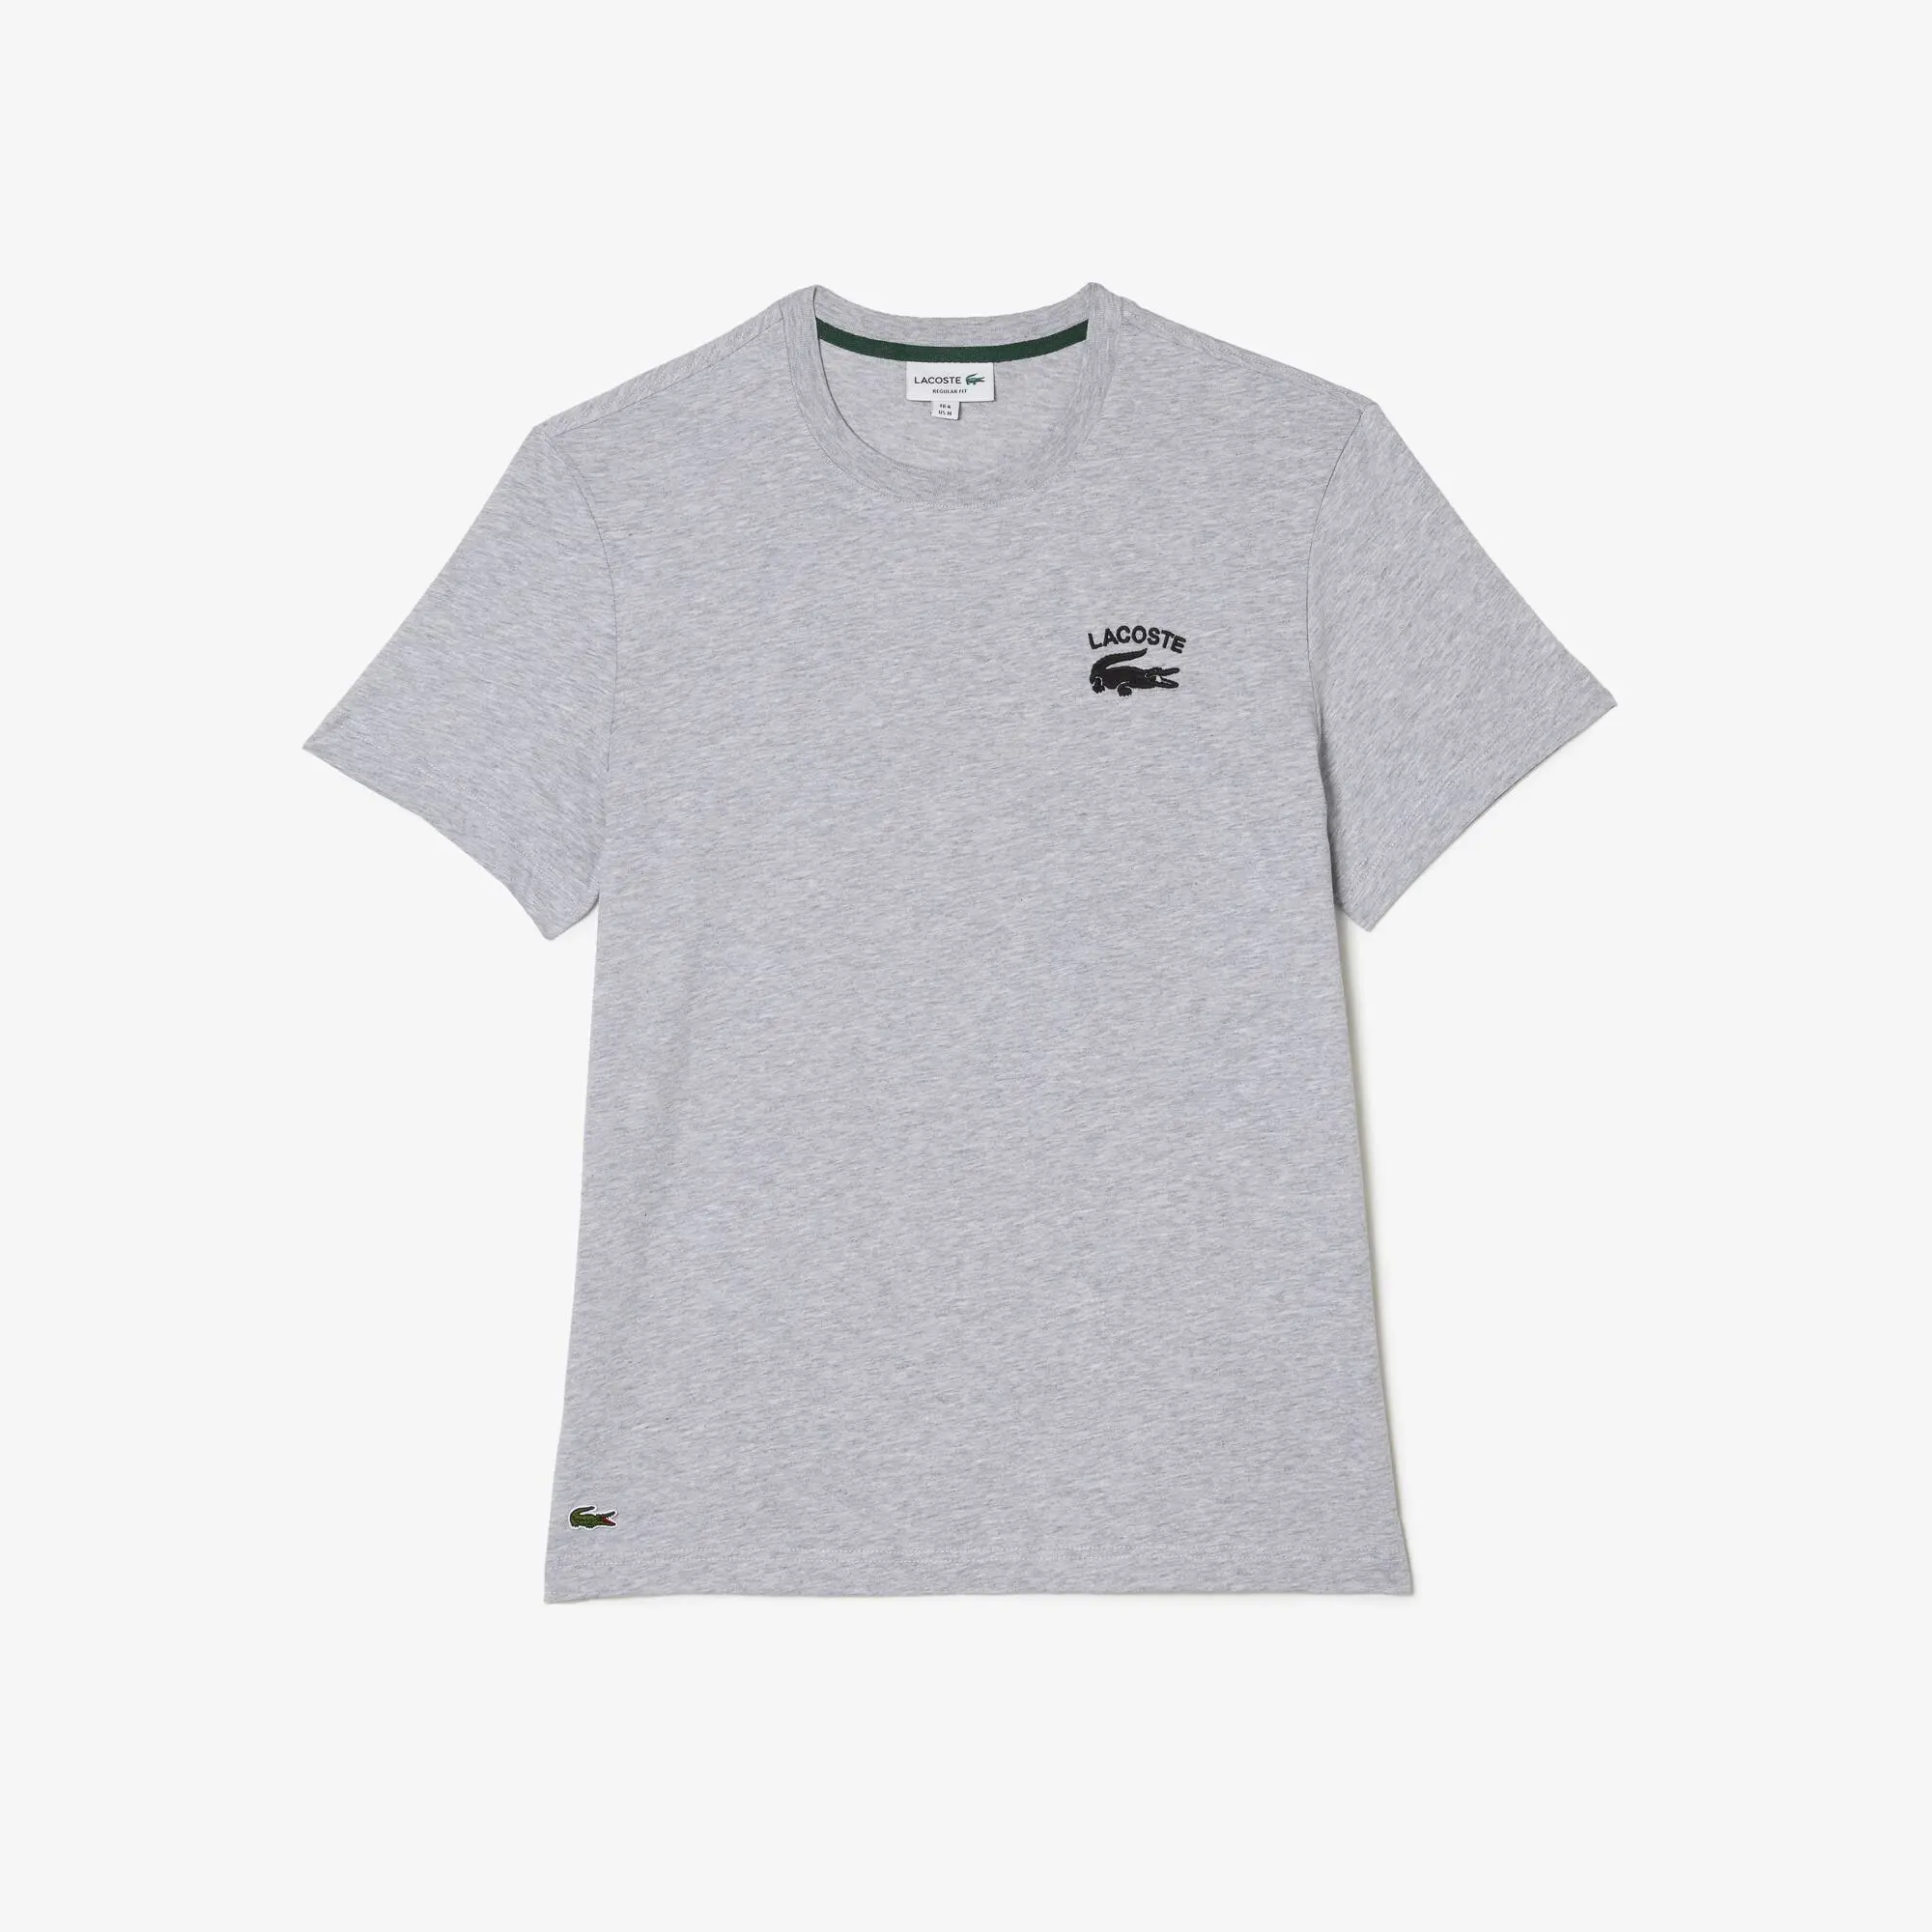 Lacoste T-shirt regular fit malha de algodão Lacoste para homem. 2